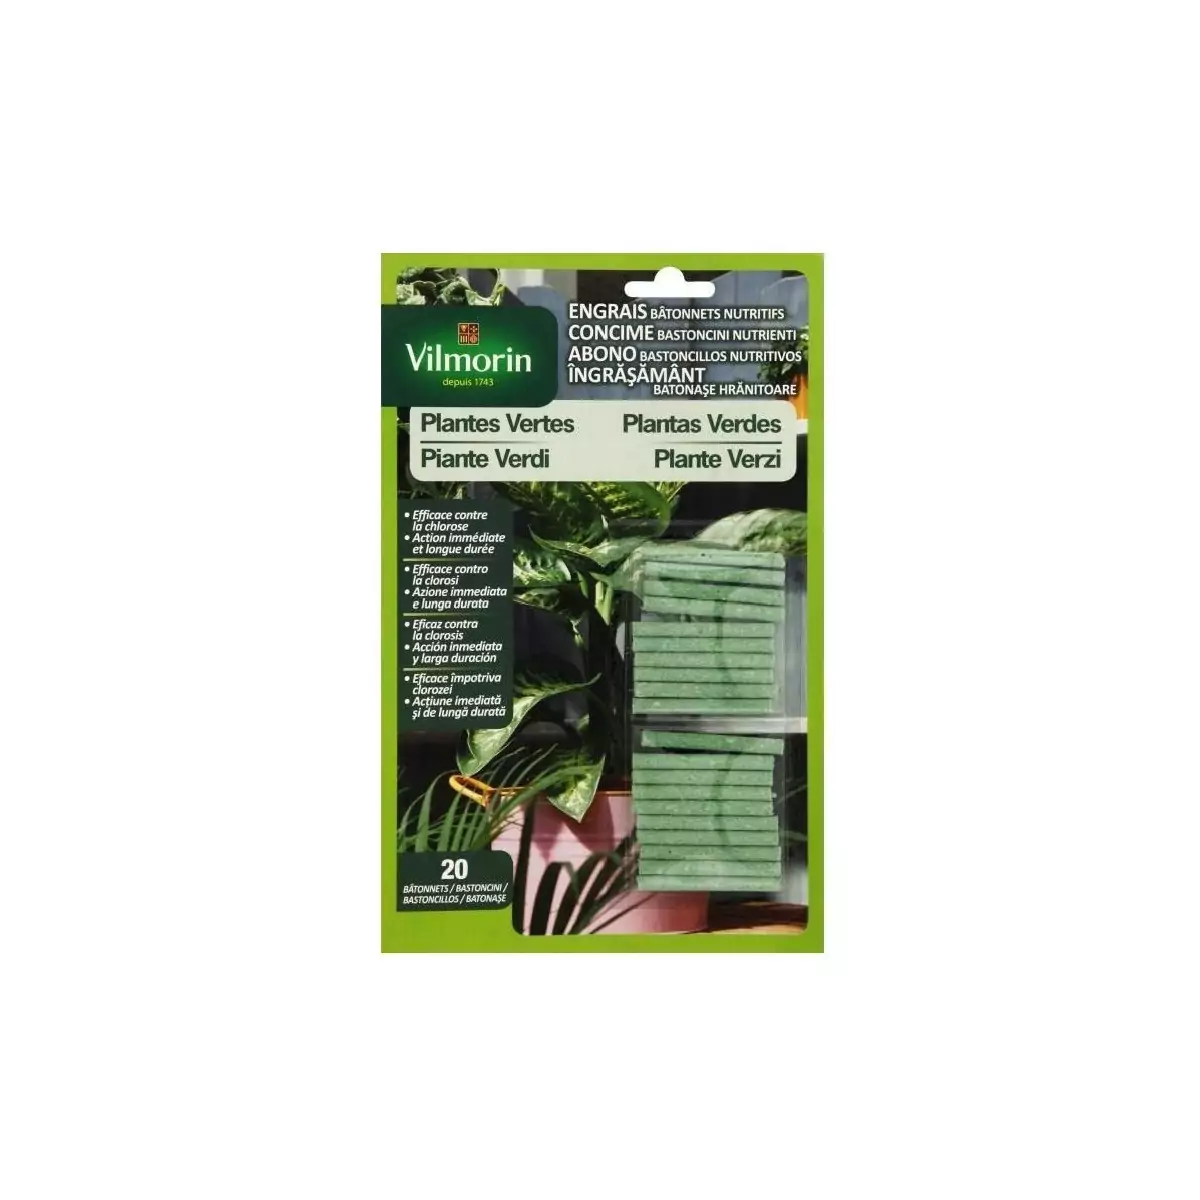 Engrais bâtonnets nutritifs VILMORIN pour plantes vertes 4LG blister de 20